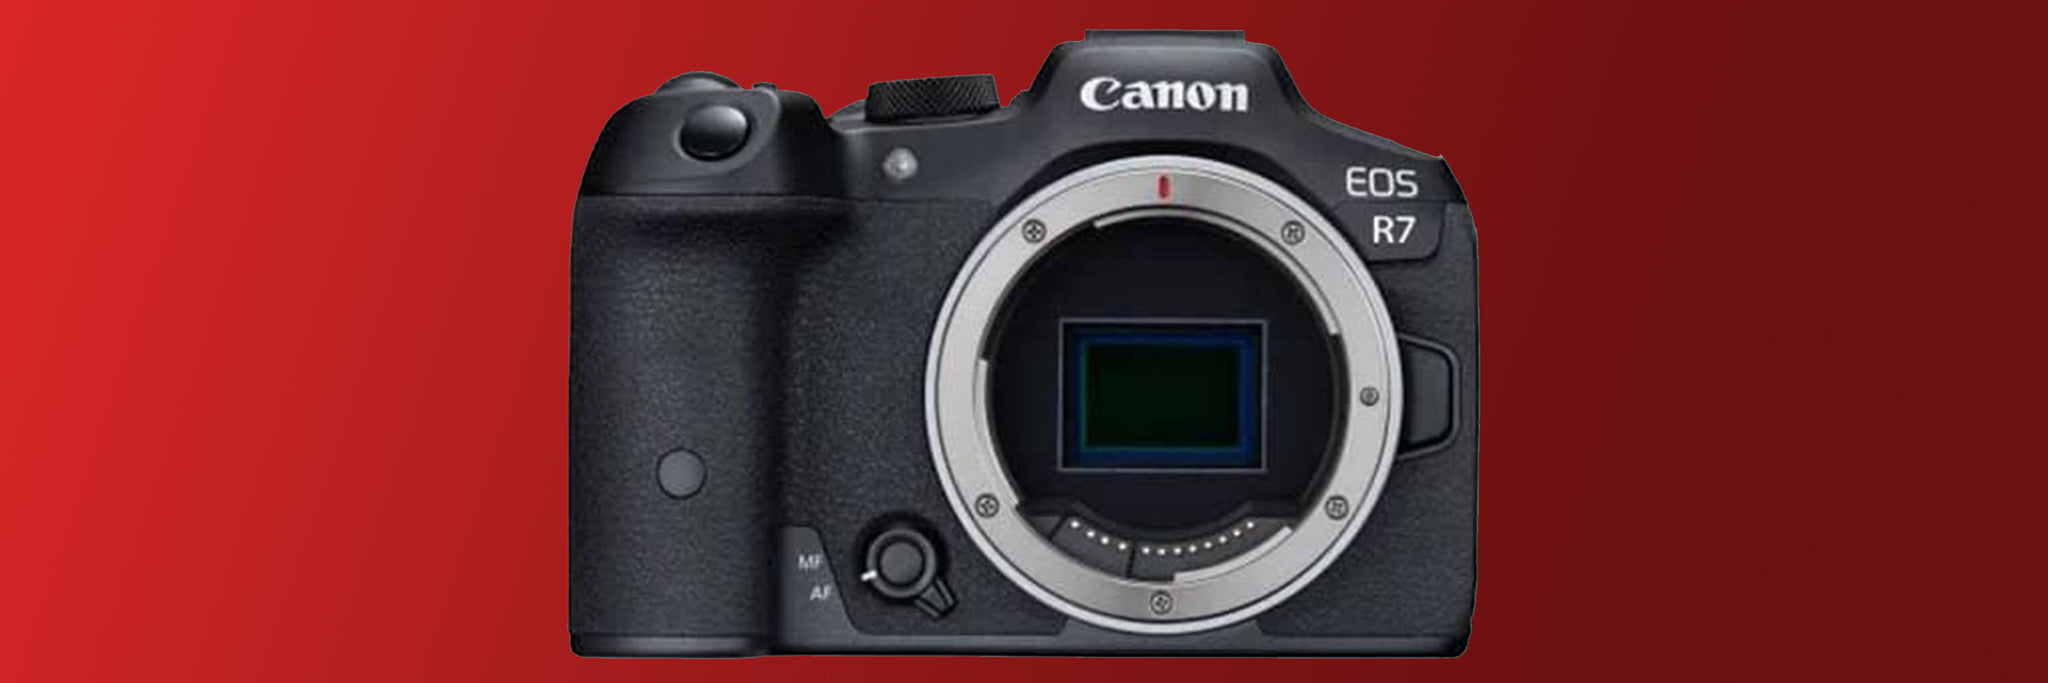 Canon EOS R7 APS-C